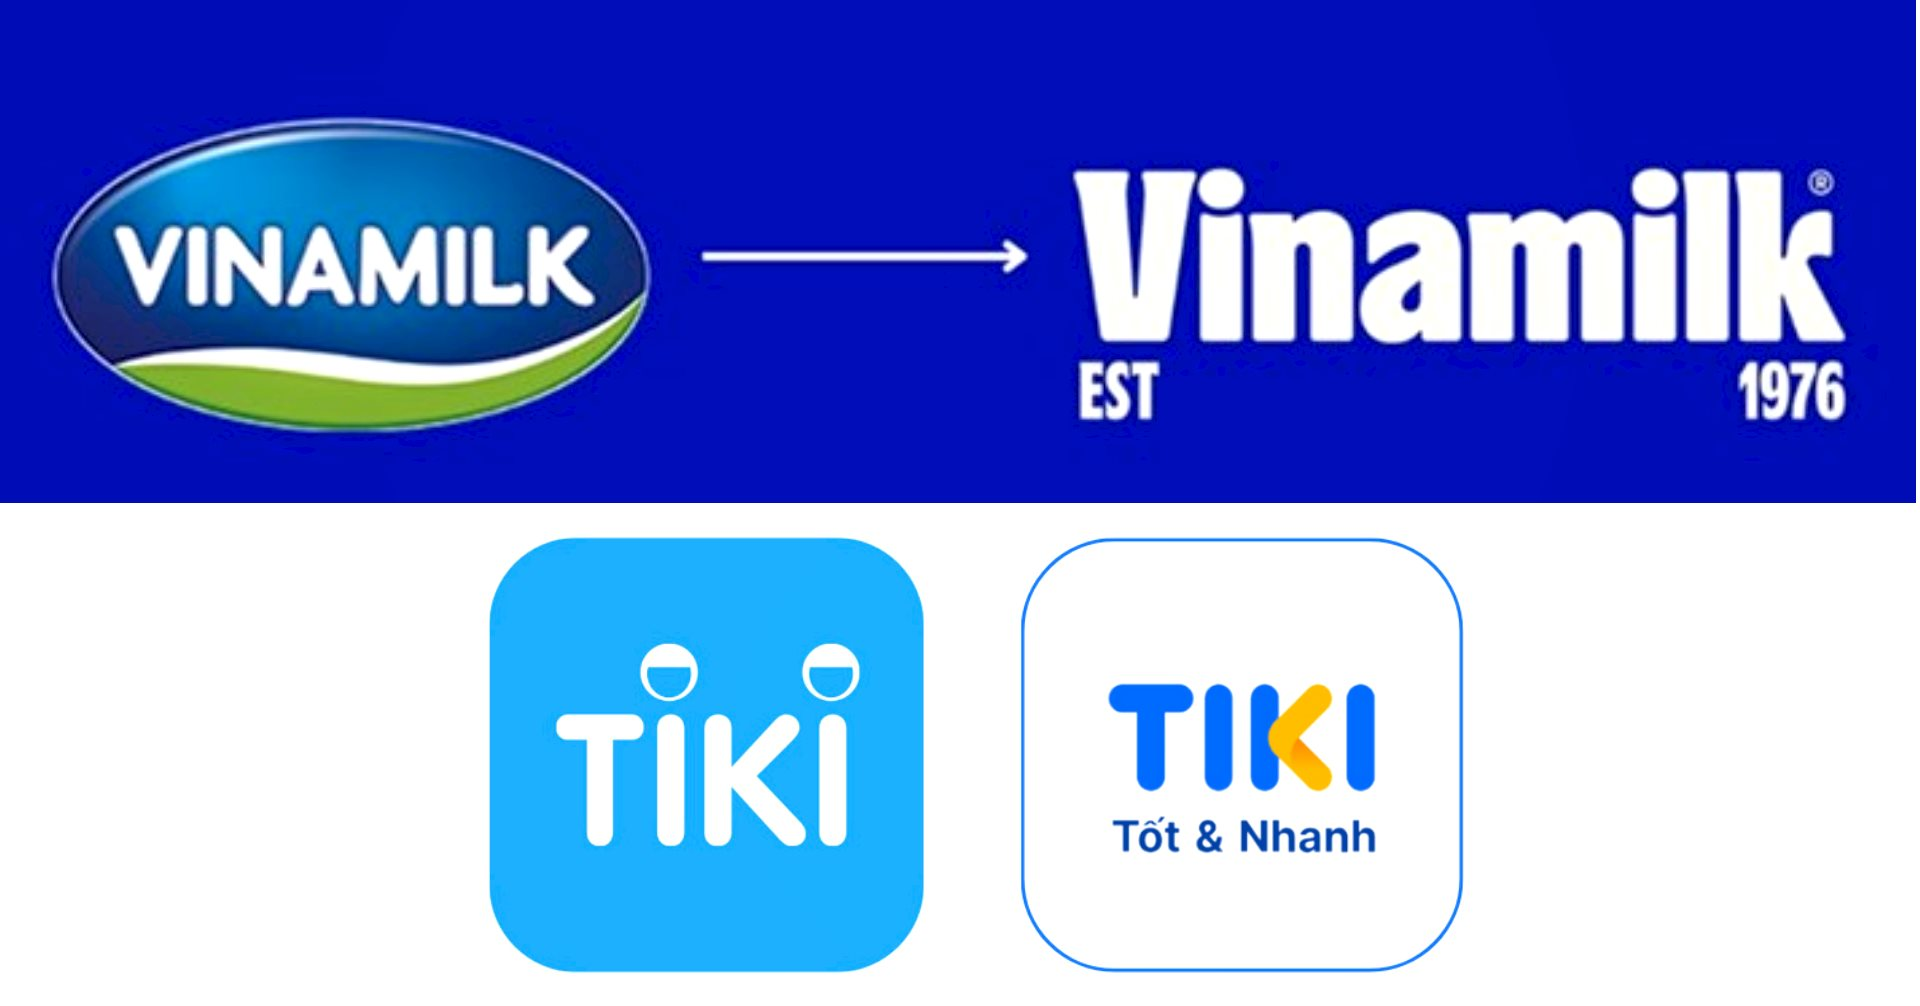 Hàng loạt thương hiệu từ Vinamilk, Bia Hà Nội đến Tiki thay đổi bộ nhận diện: Các nhãn hàng phải làm gì khi chỉ còn 3 - 6 giây để thu hút người dùng? - Ảnh 1.